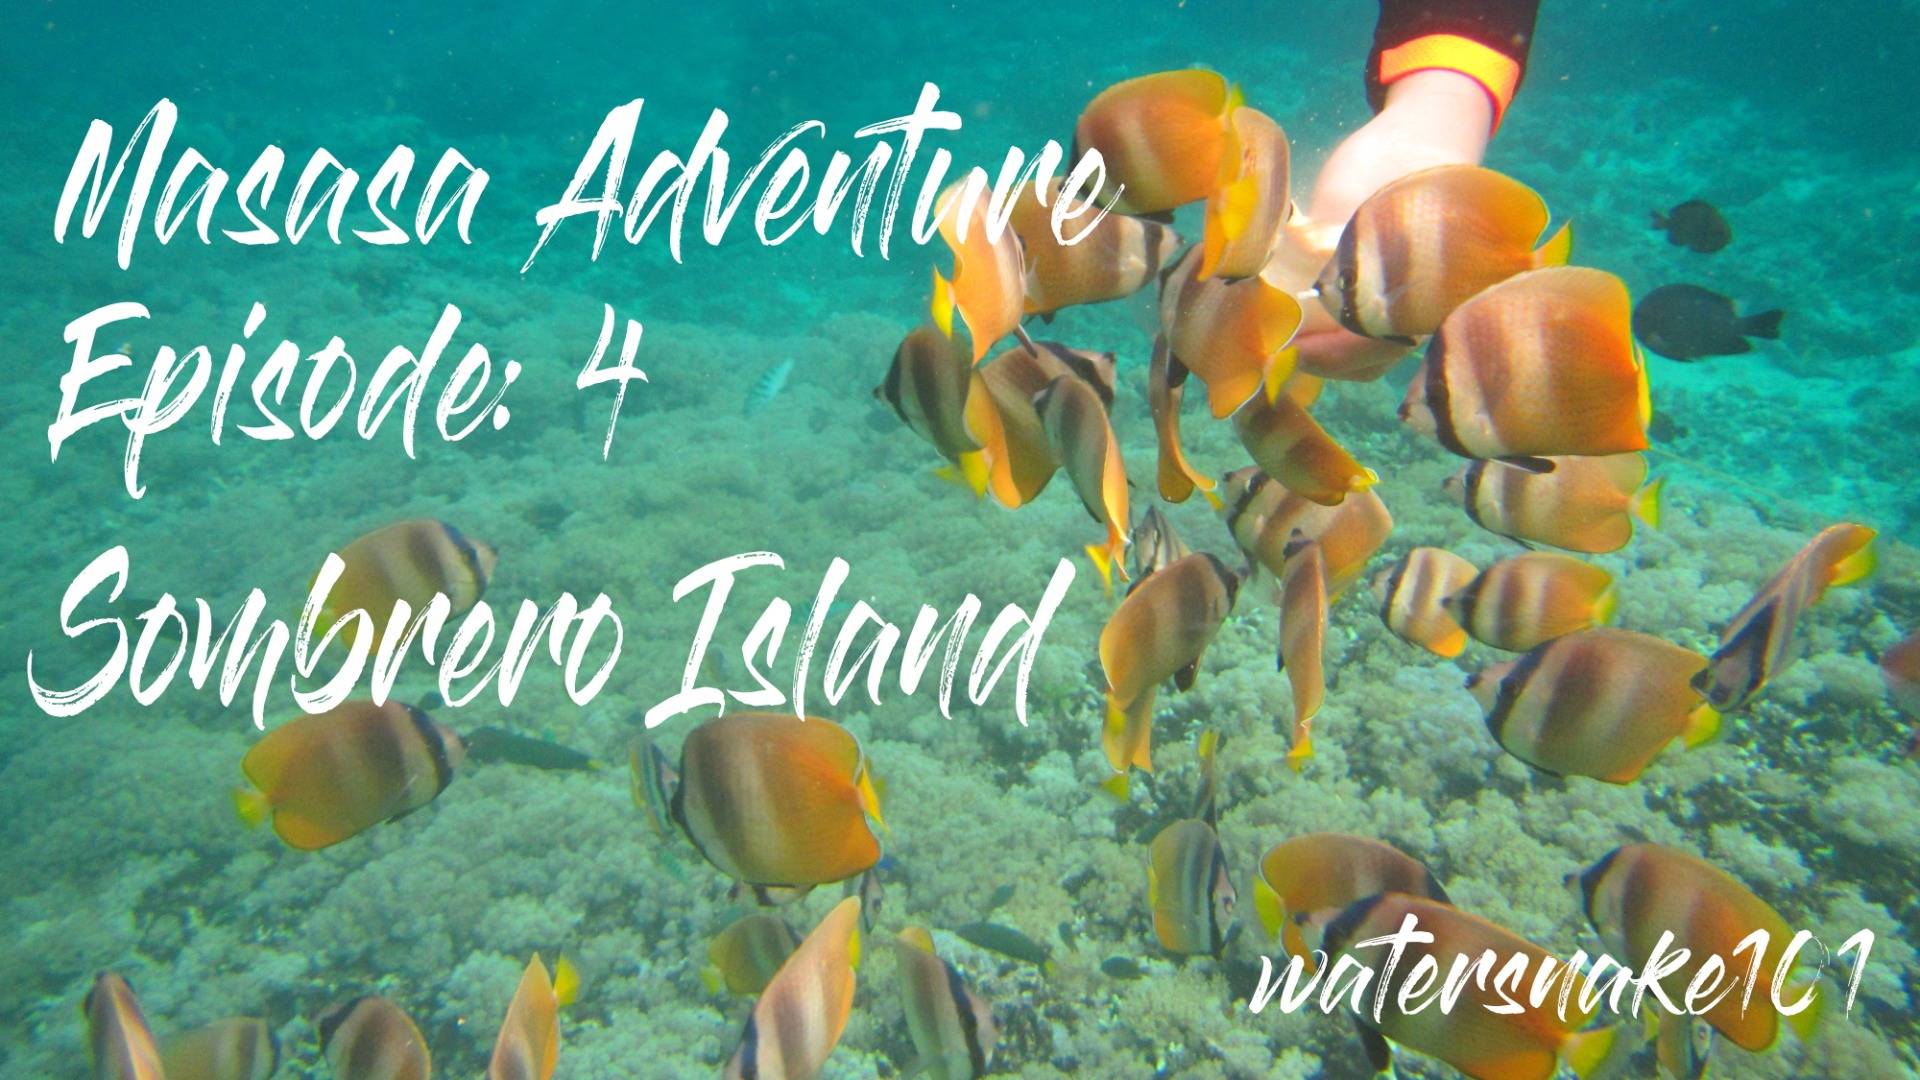 Masasa Adventure Episode: 4 "Sombrero Island"